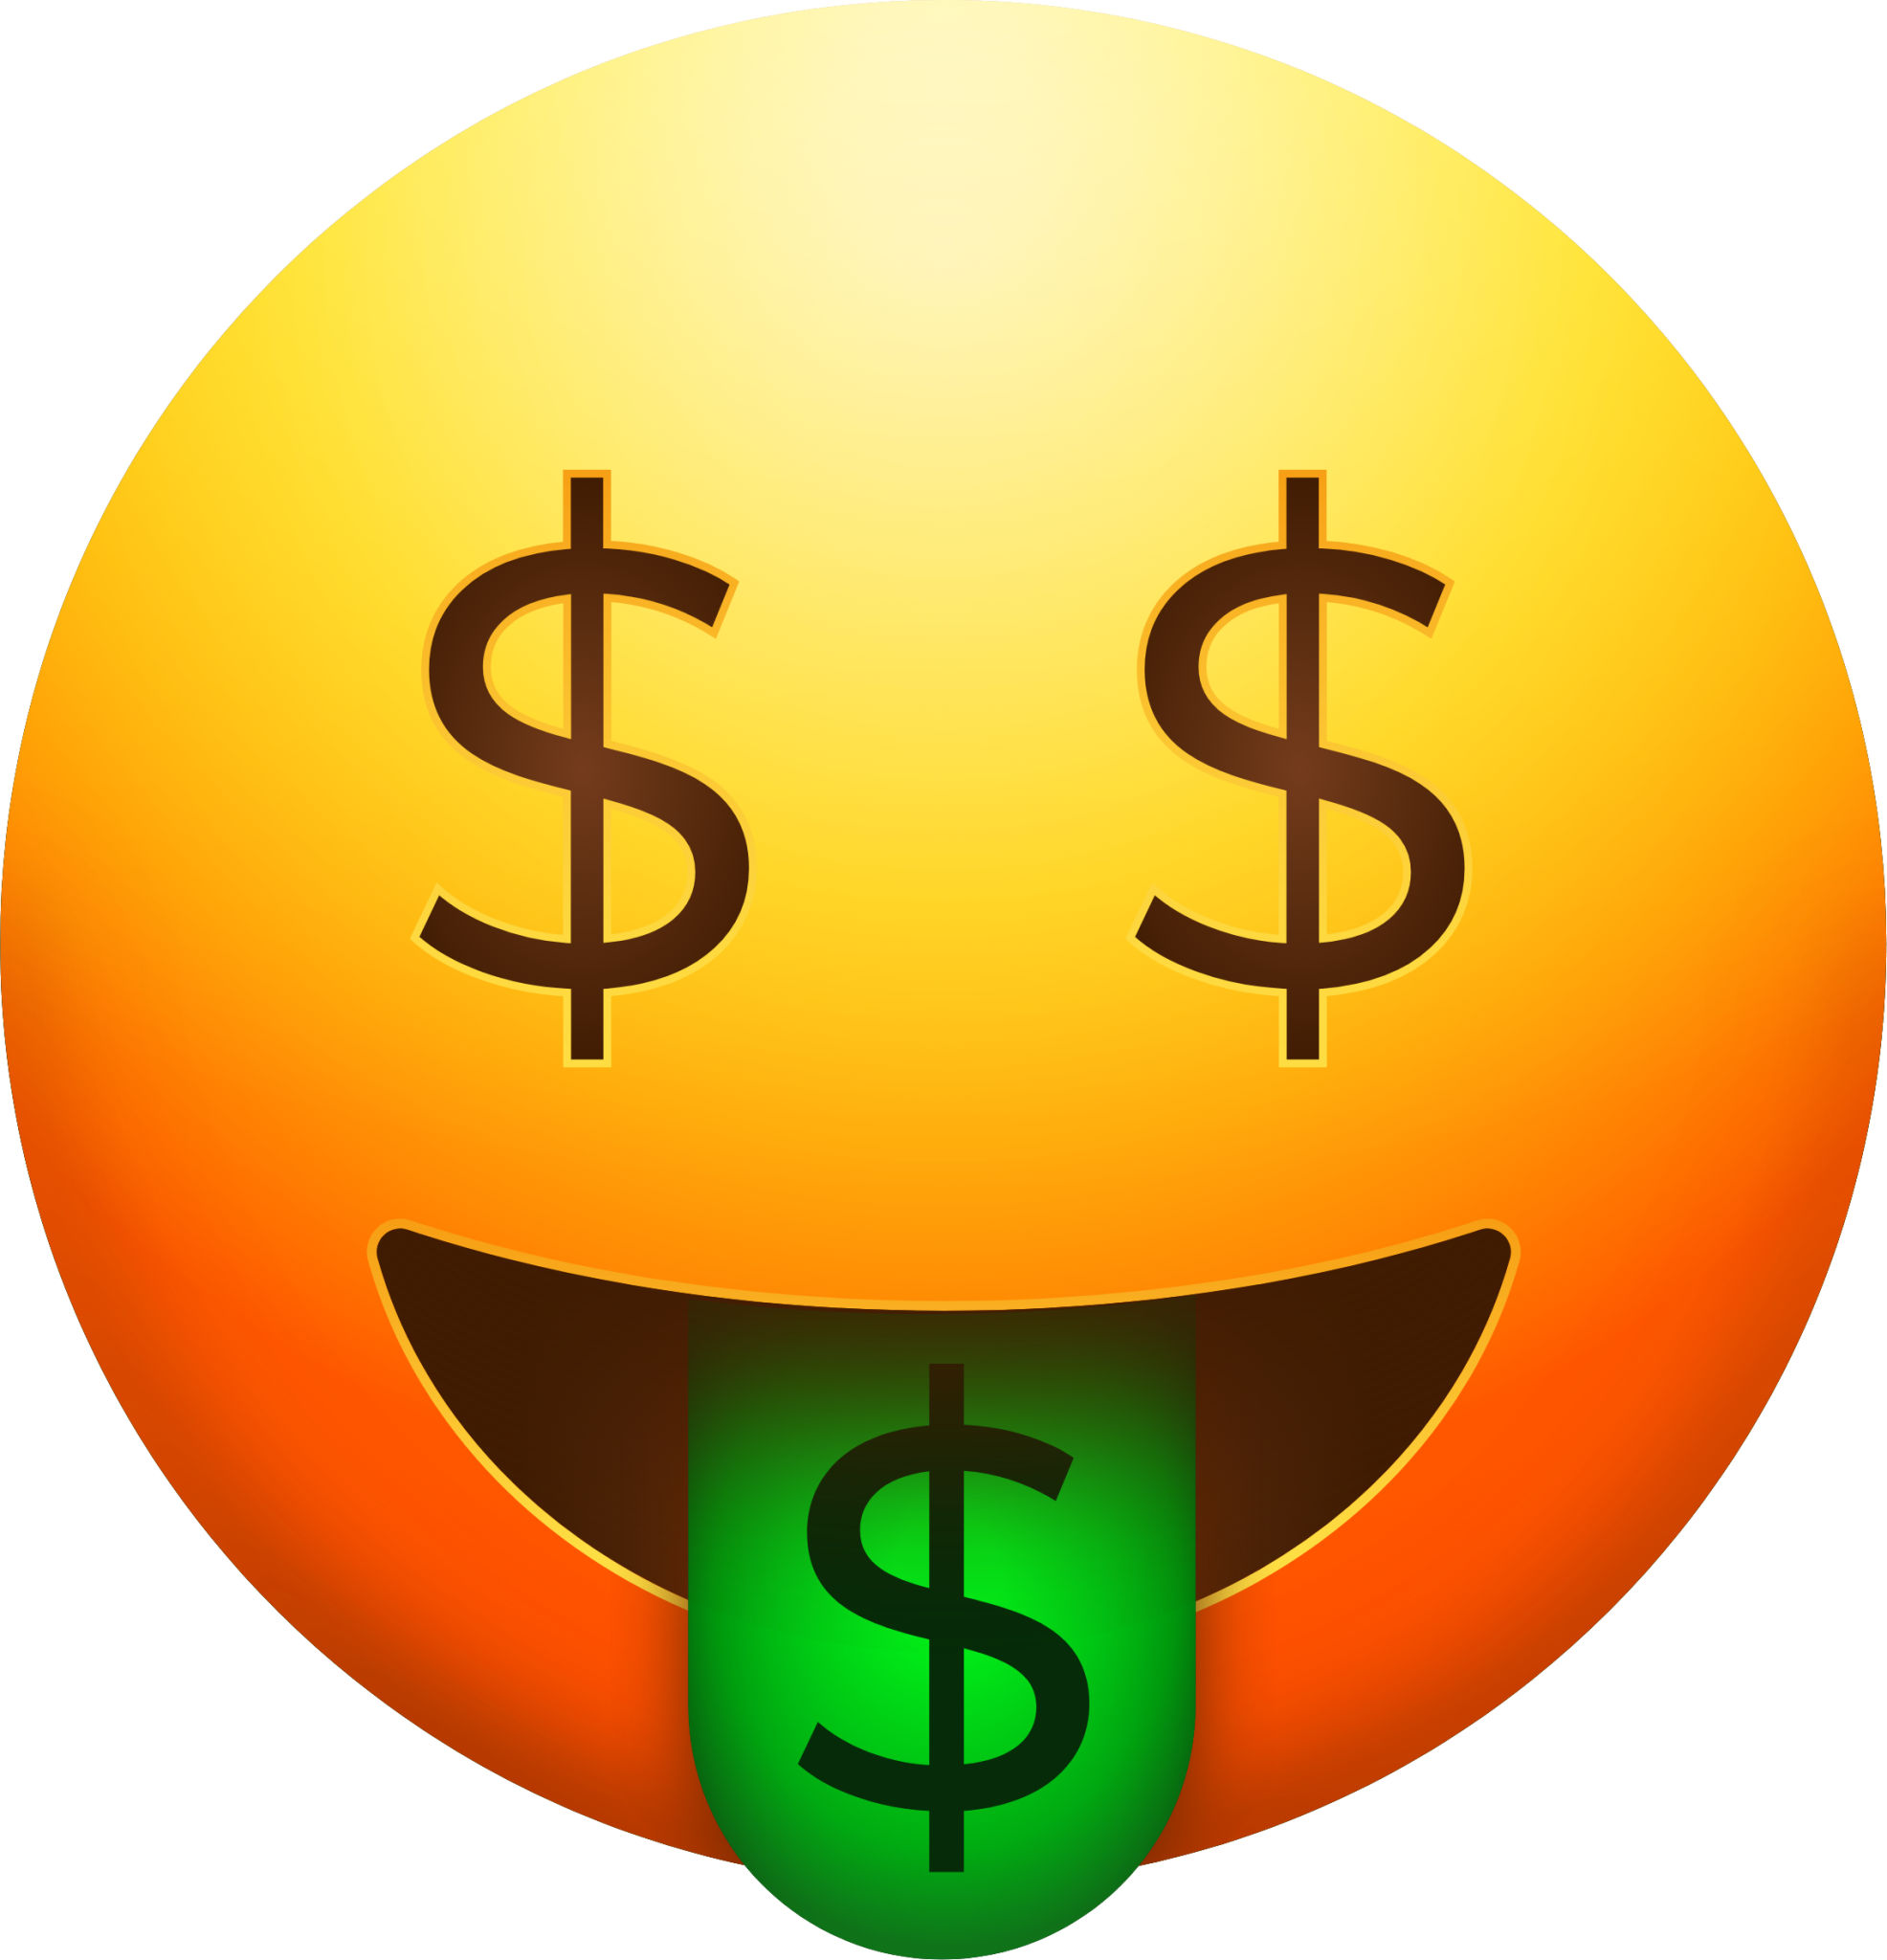 Money Mouth Face Yen Emoji PNG Images & PSDs for Download